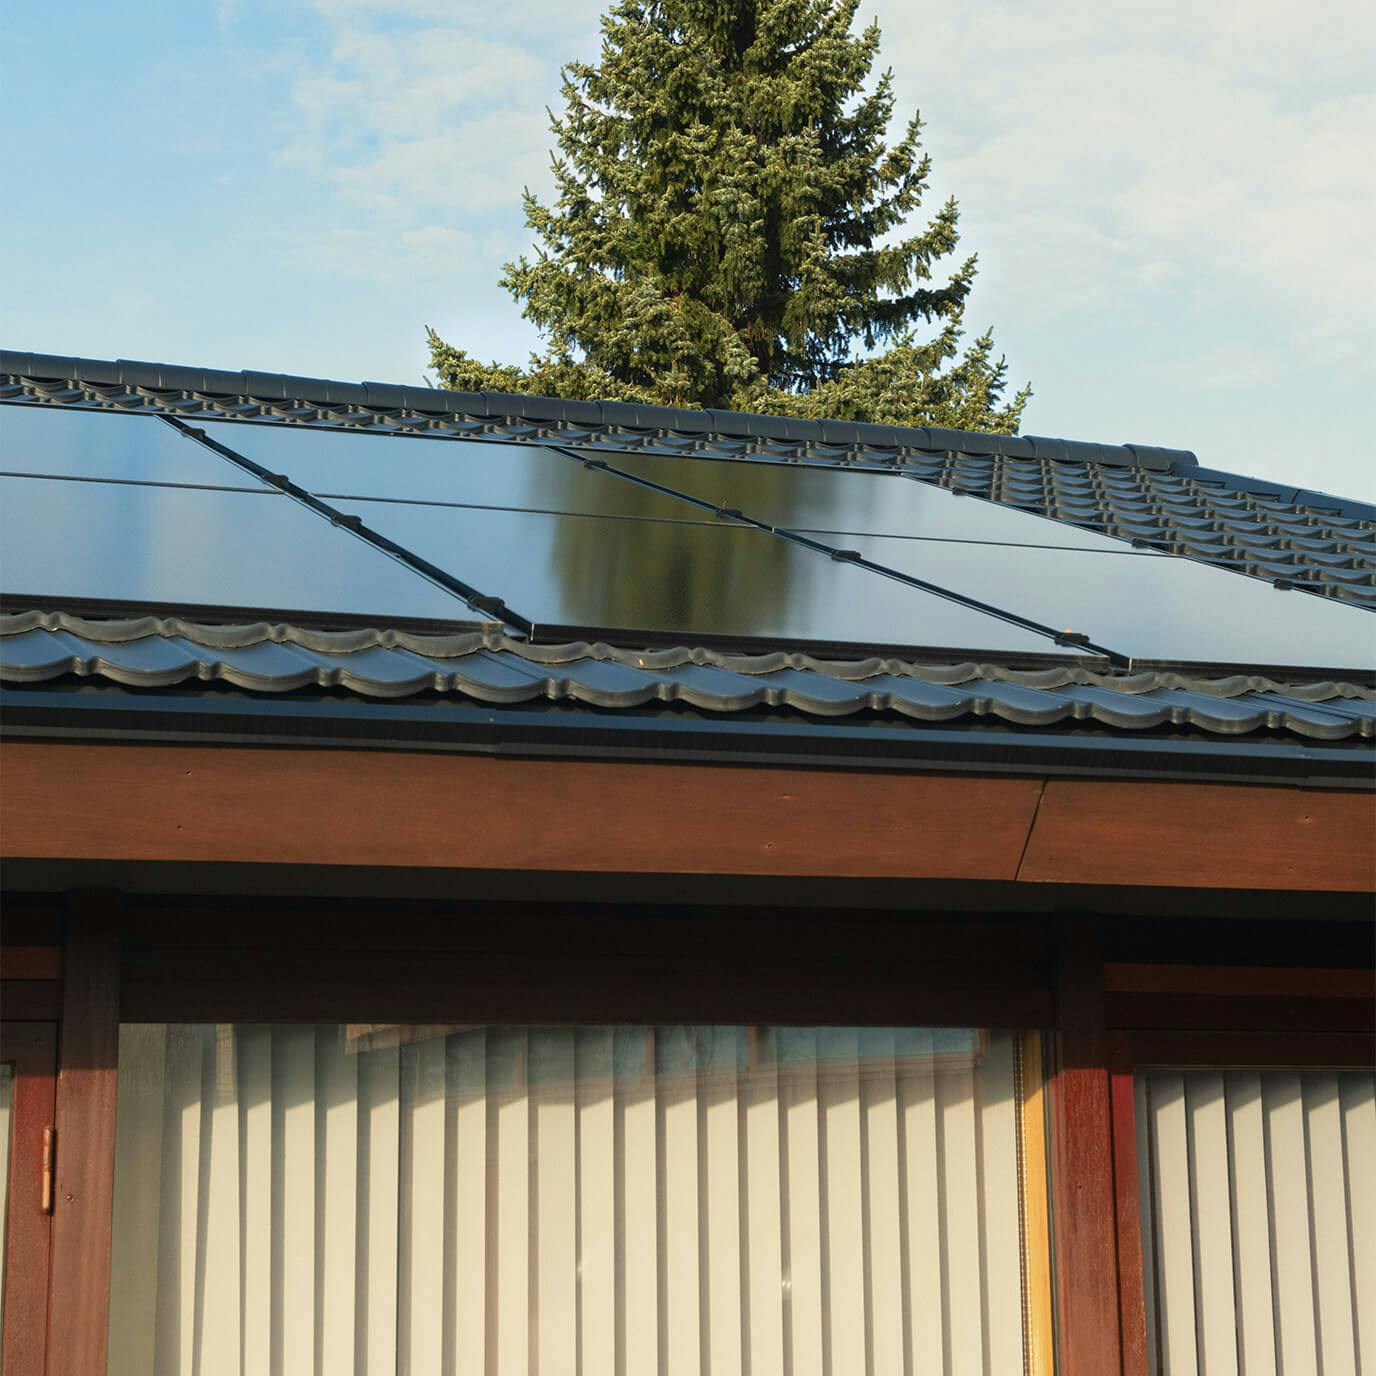 Hus med solceller på taget